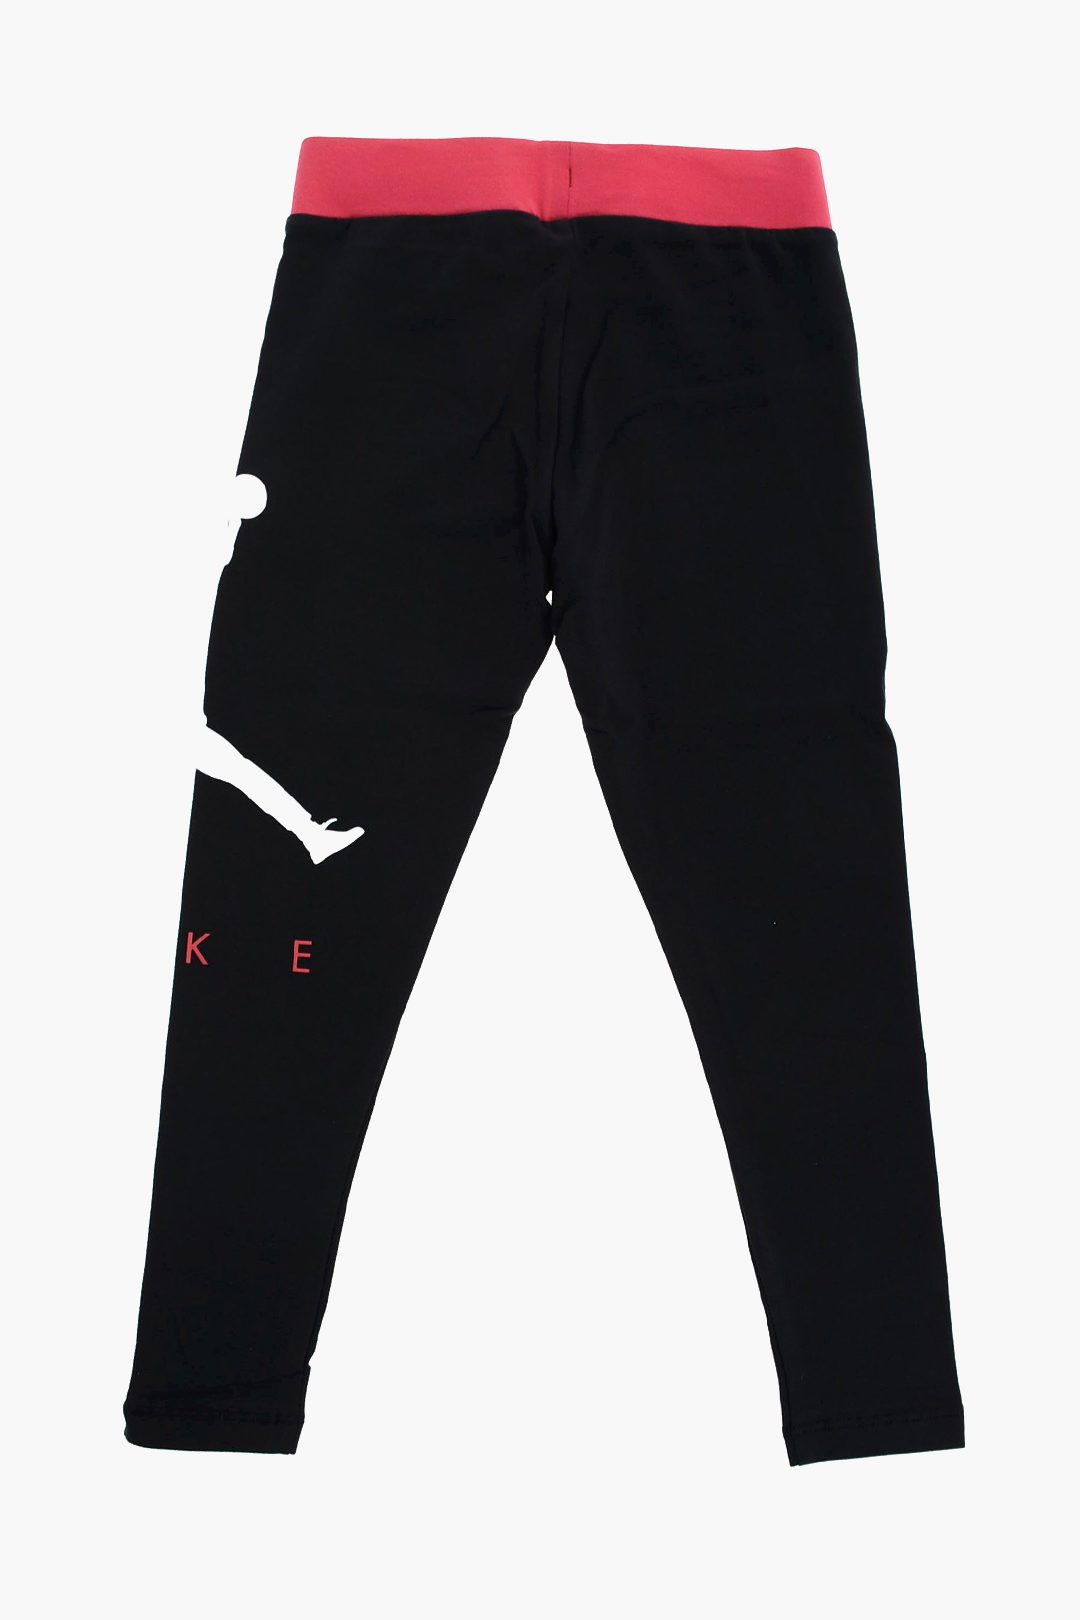 Nike KIDS AIR JORDAN Logo Printed Stretch Cotton Leggings girls - Glamood  Outlet